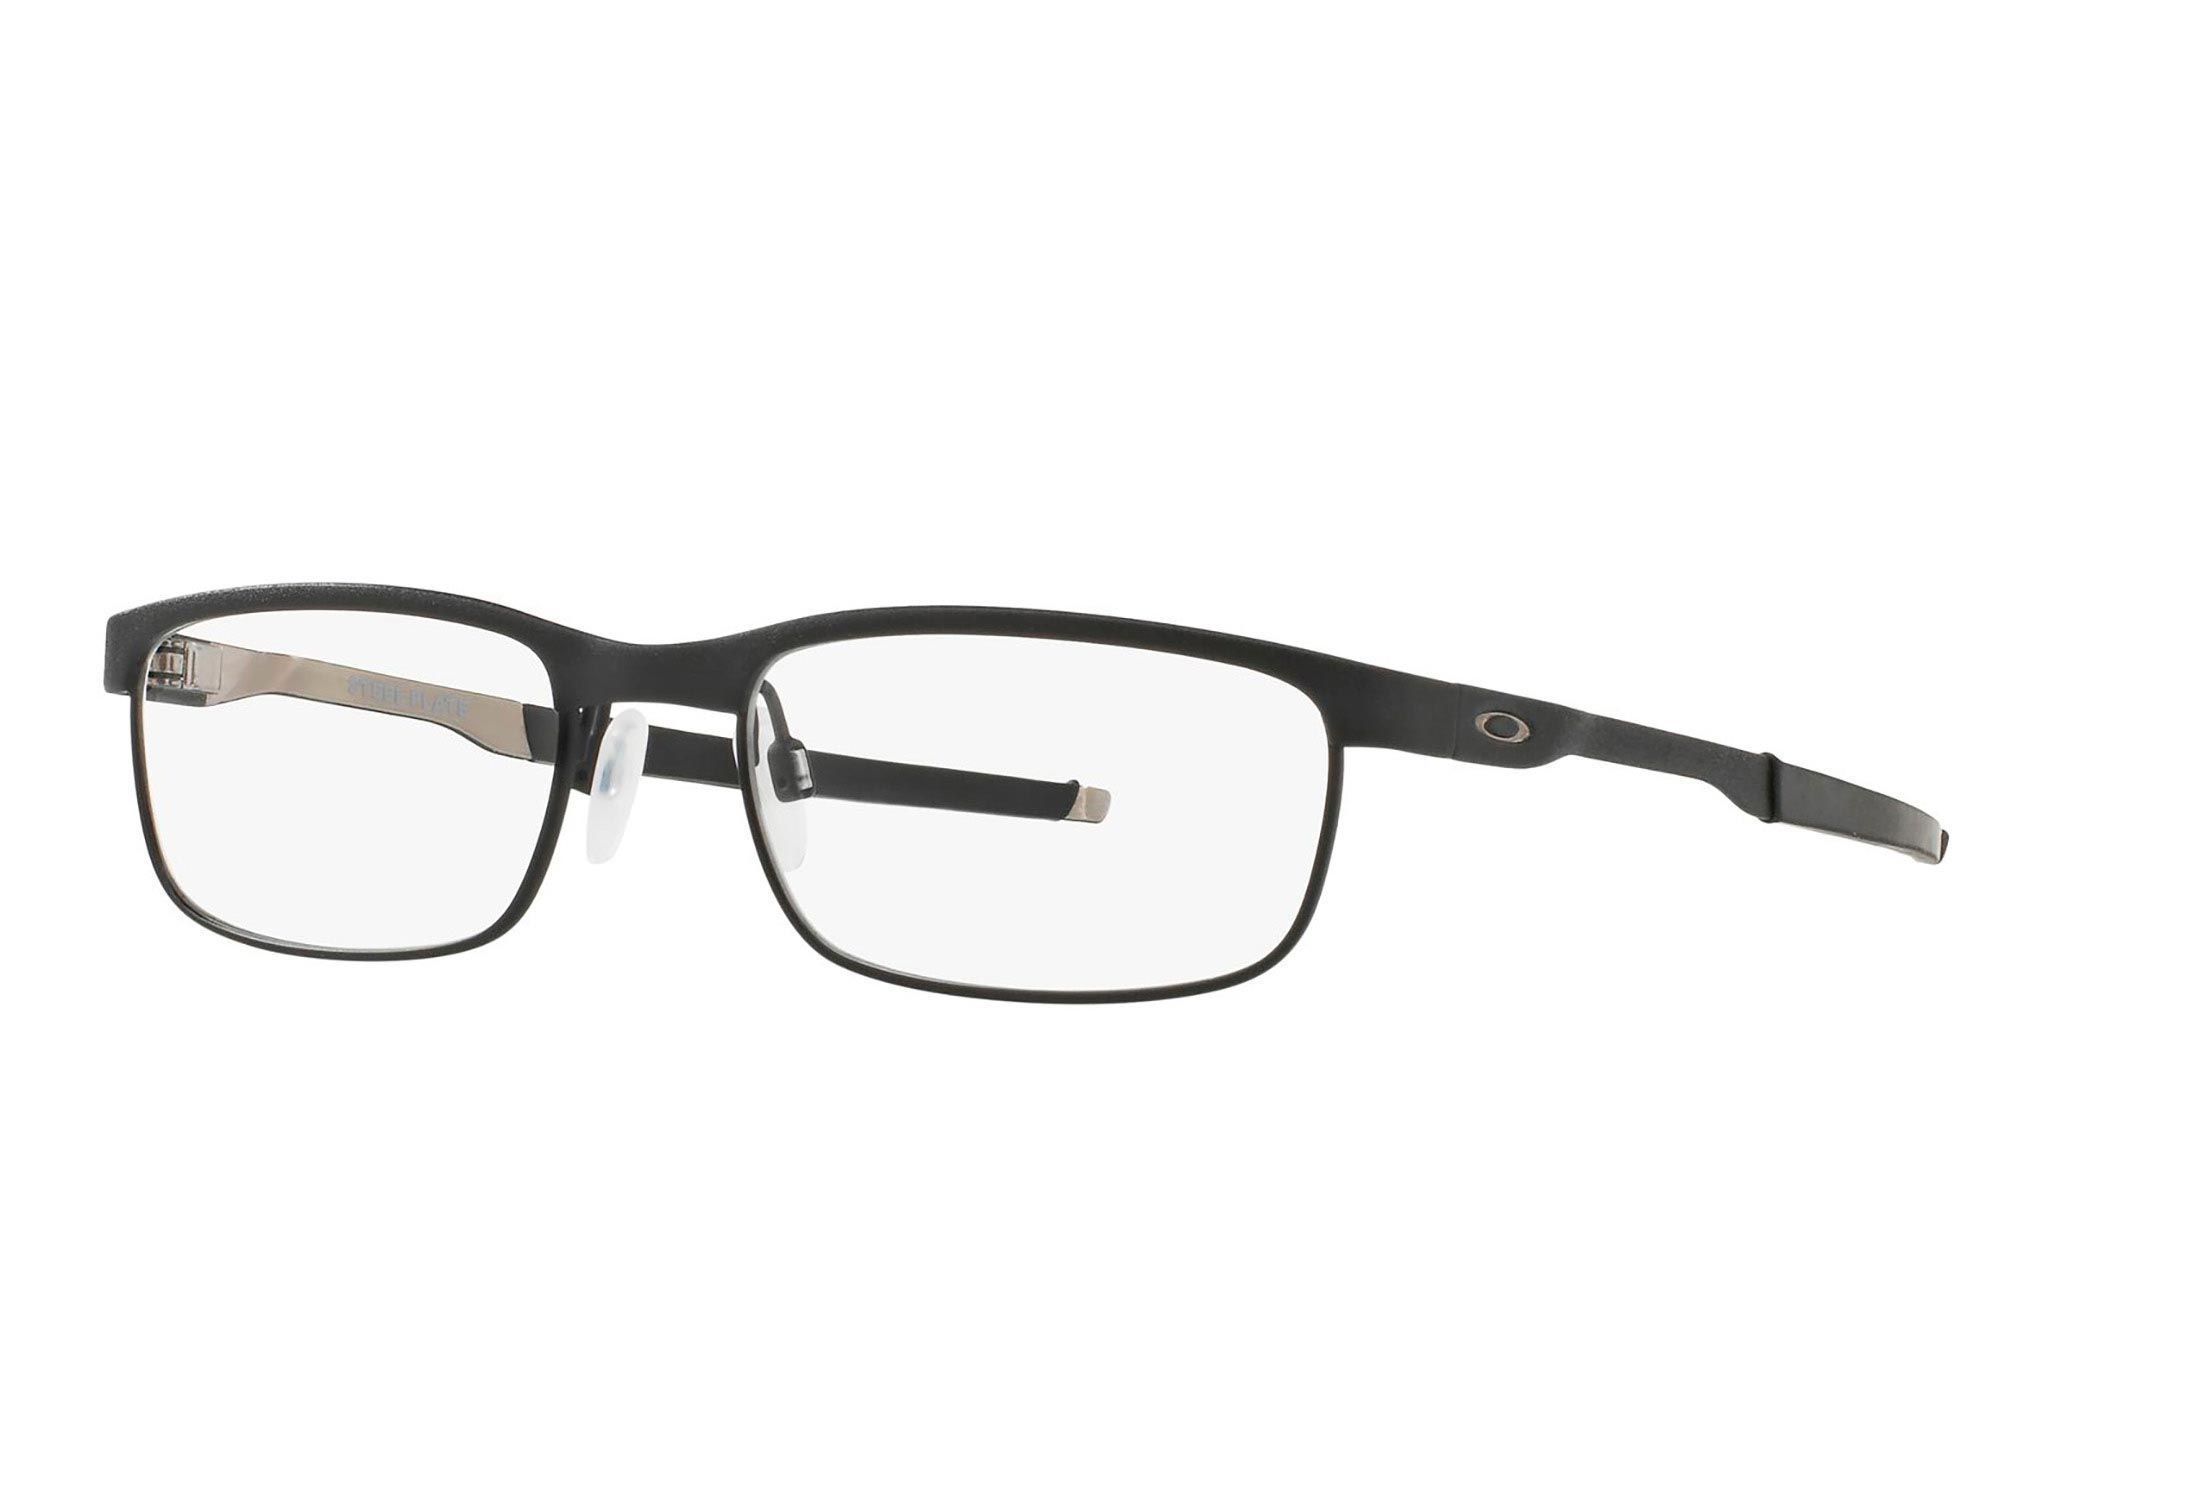 Oakley briller - Steel Plate ox3222 - Svart, Small Hel ramme i Metall - Rektangulære